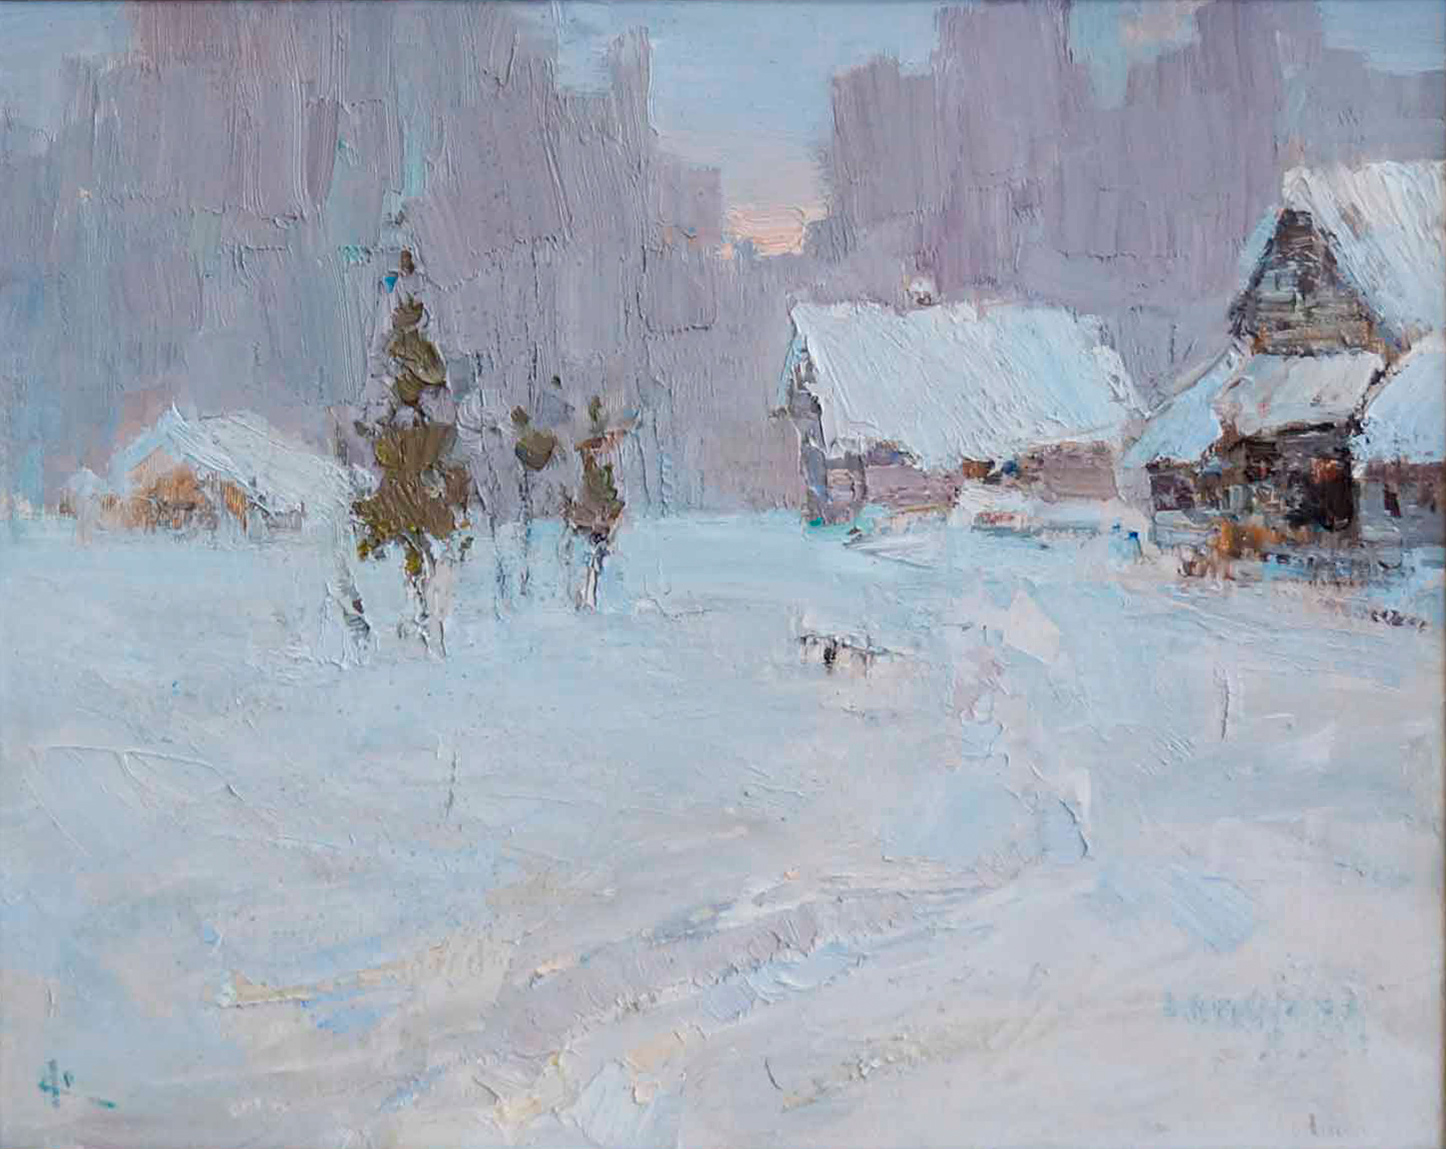 Frosty - 1, Vyacheslav Korolenkov, Buy the painting Oil